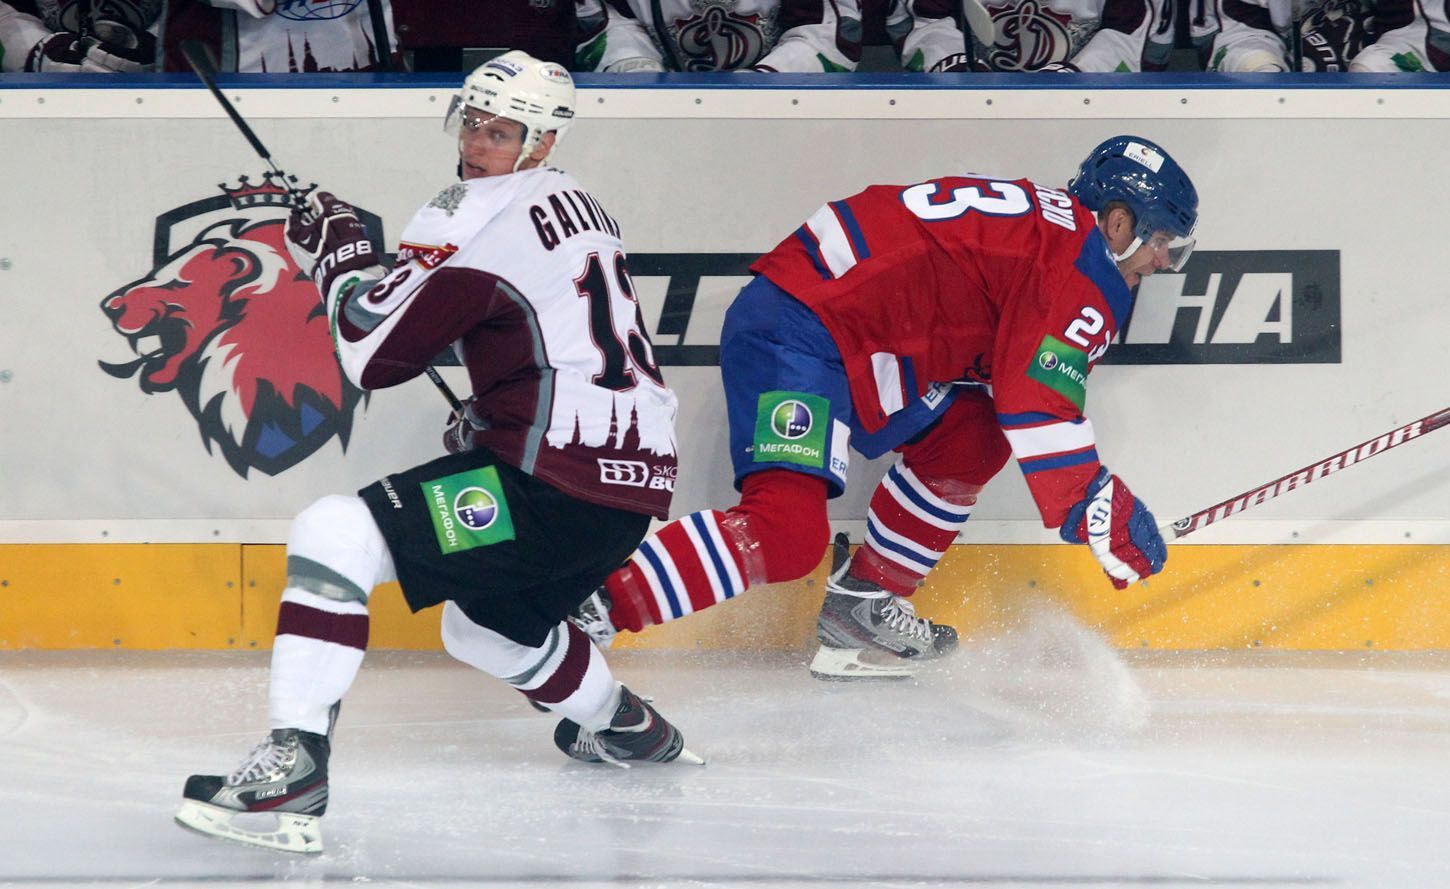 Hokejista Guntis Galvinš vyhazuje před Ľubošem Bartečkem v utkání KHL 2012/13 mezi Lvem Praha s Dinamem Riga .